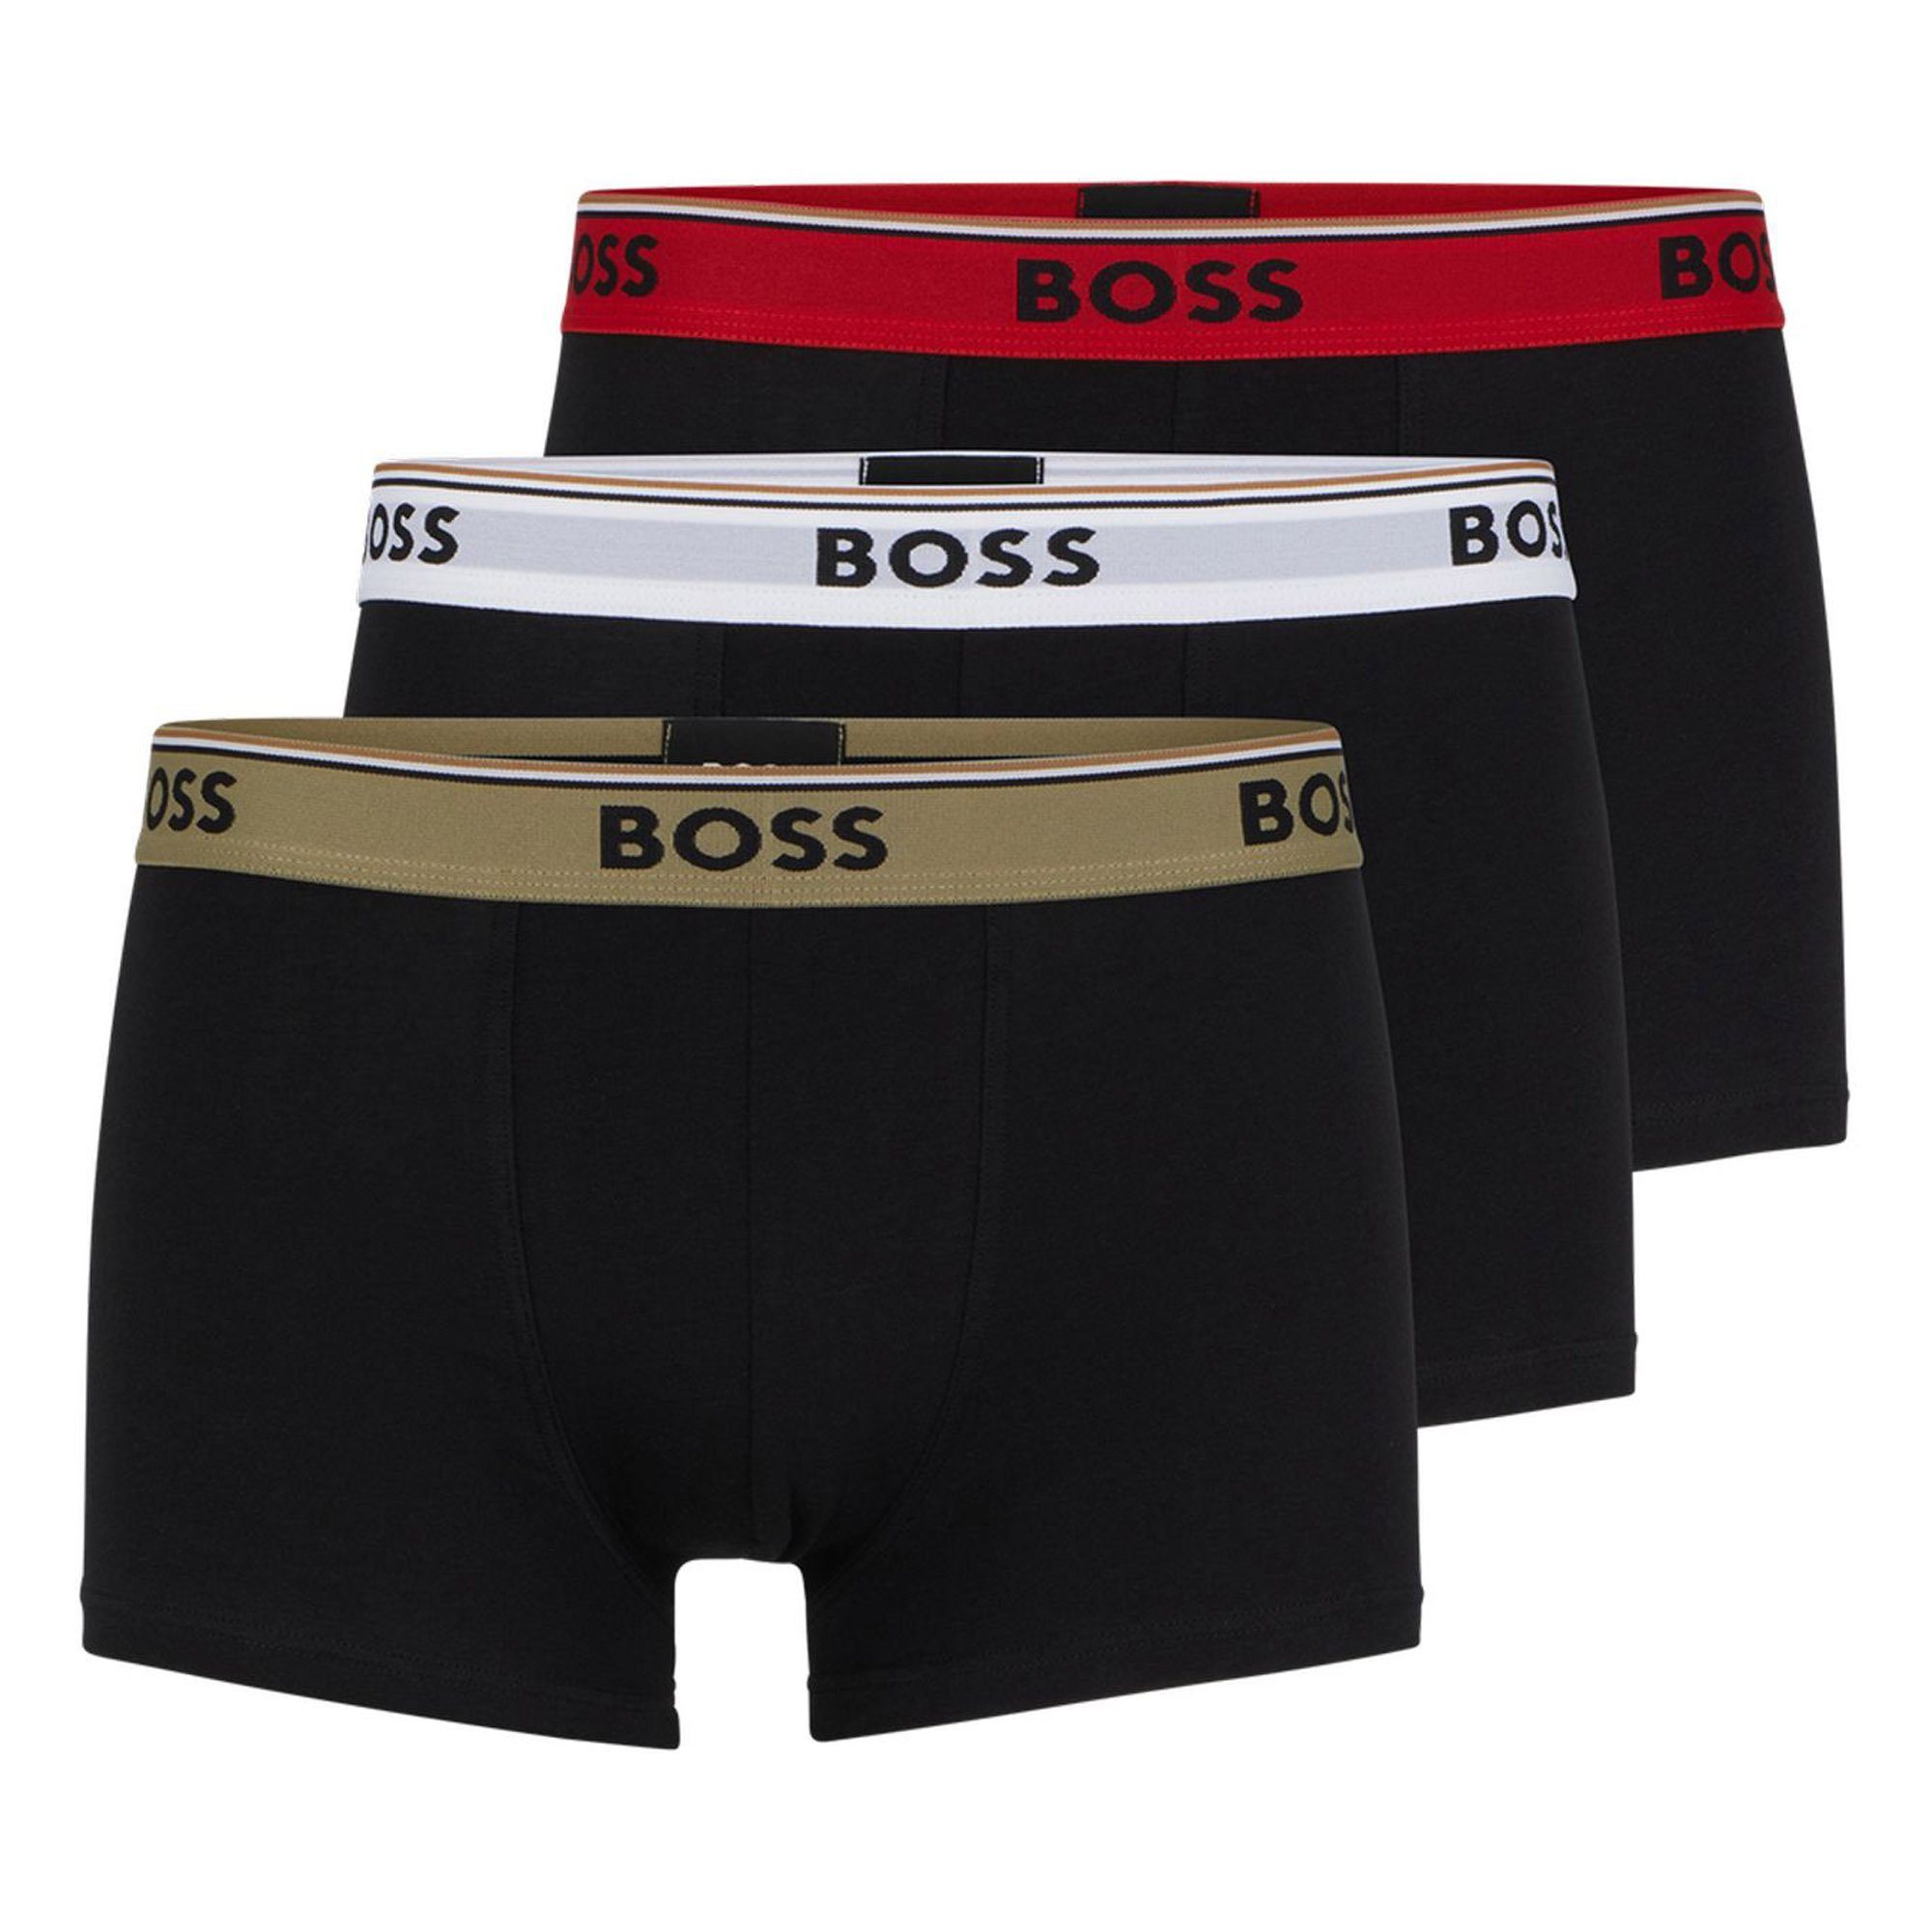 BOSS Boxer Herren Trunks, 3er Pack - Power, Unterwäsche Schwarz/Olive/Rot/Weiß